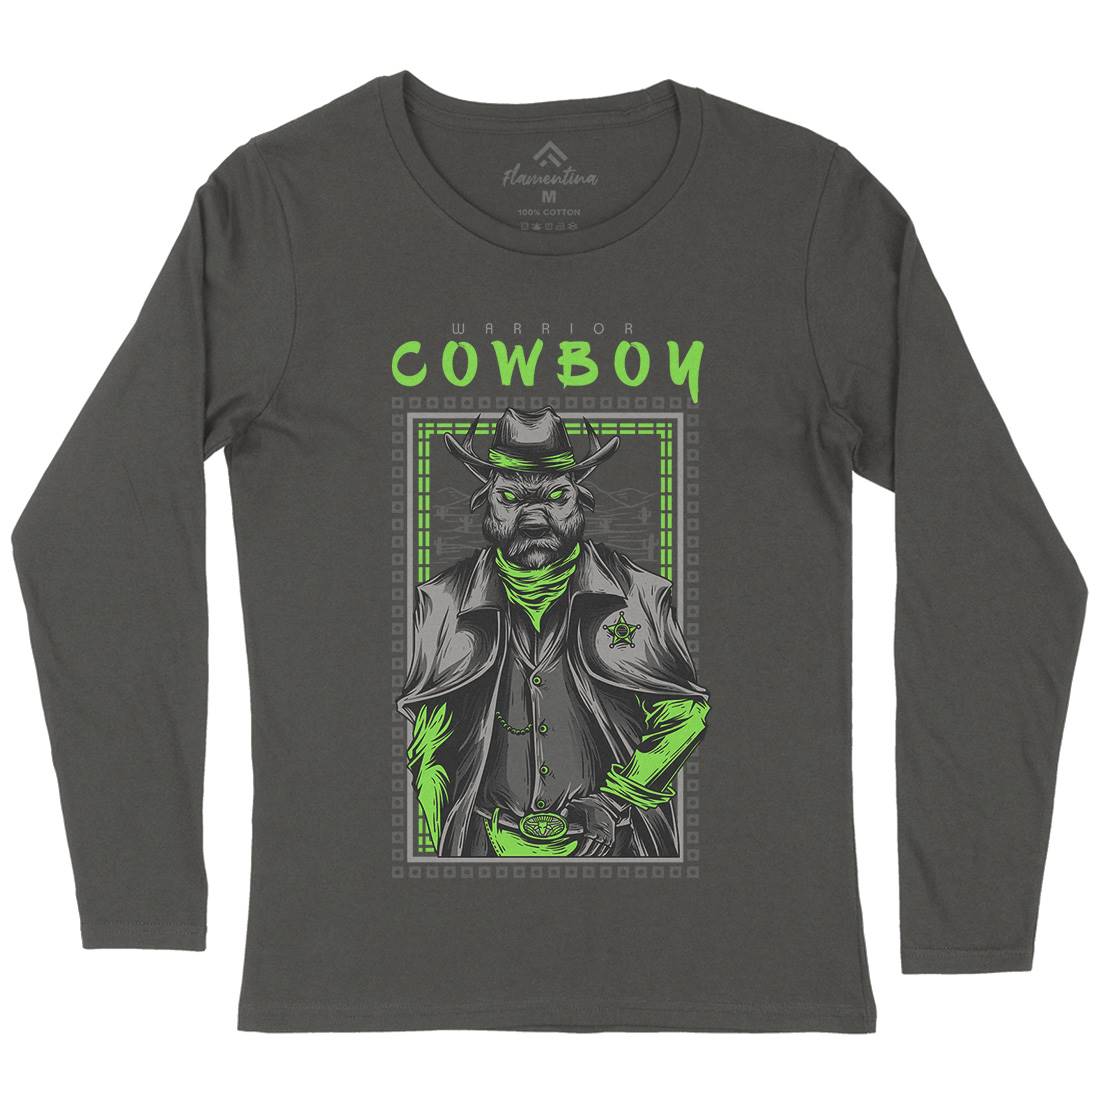 Cowboy Warrior Womens Long Sleeve T-Shirt American D735